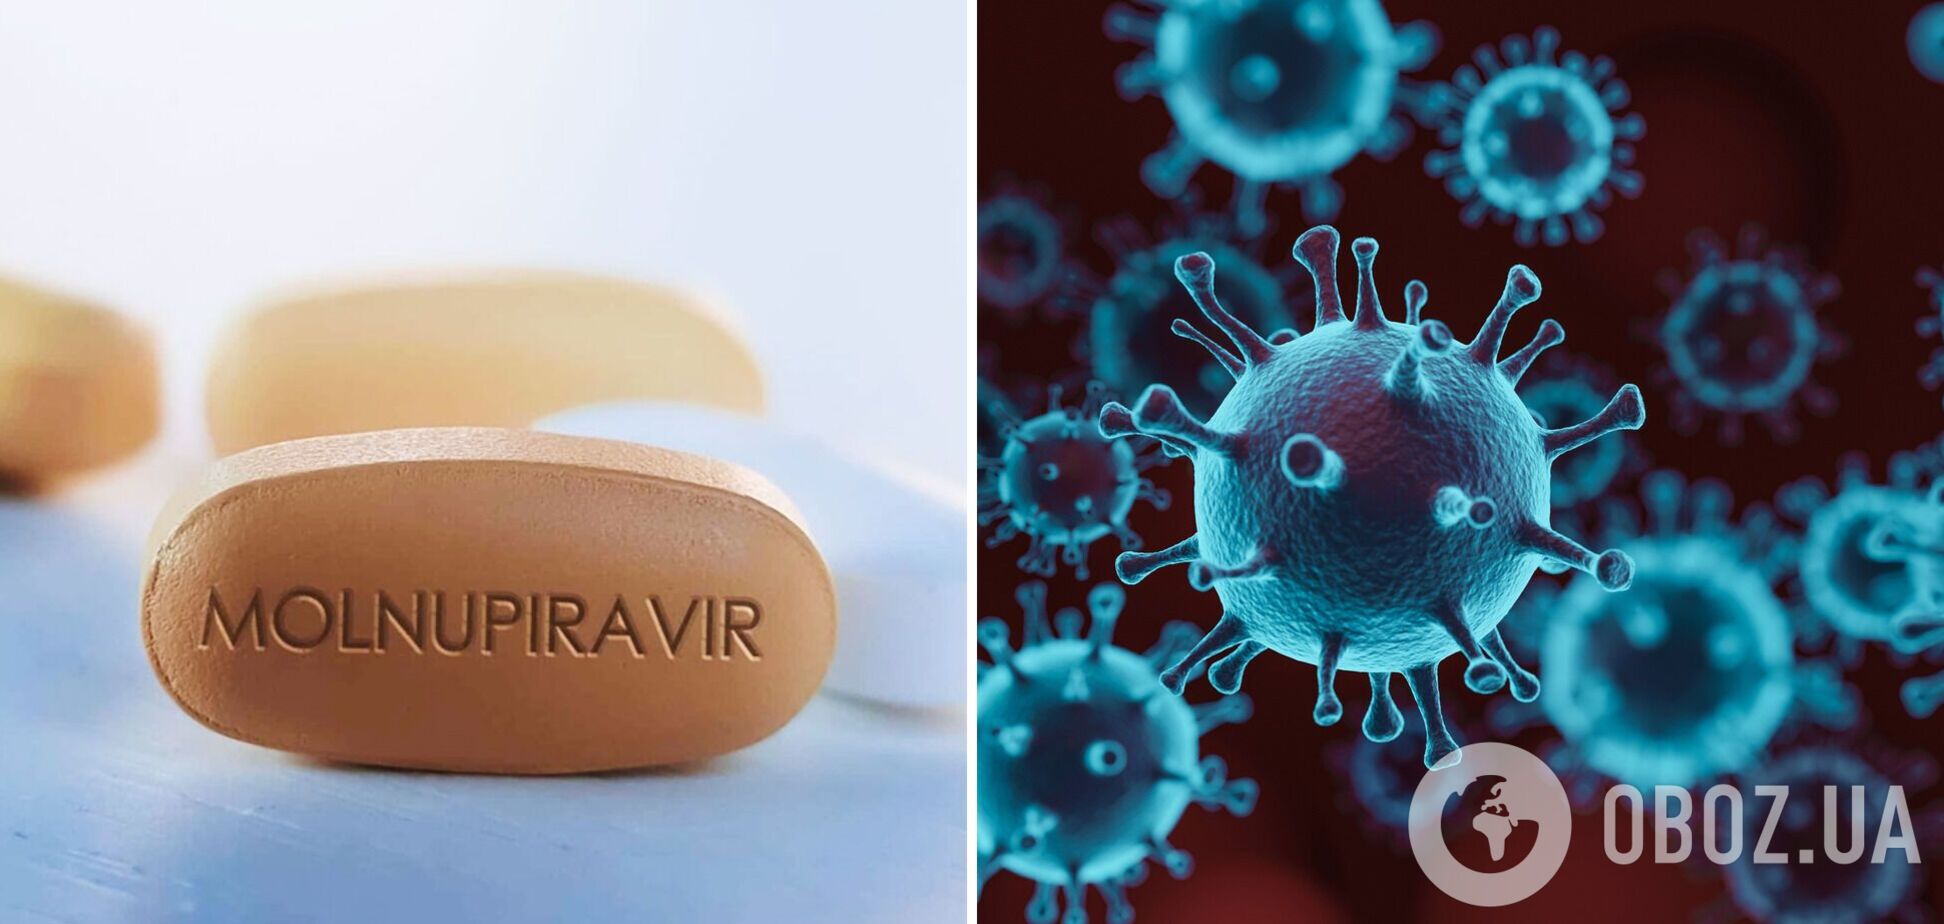 В Украину доставили партию препарата 'Молнупиравир', который будут использовать для лечения COVID-19